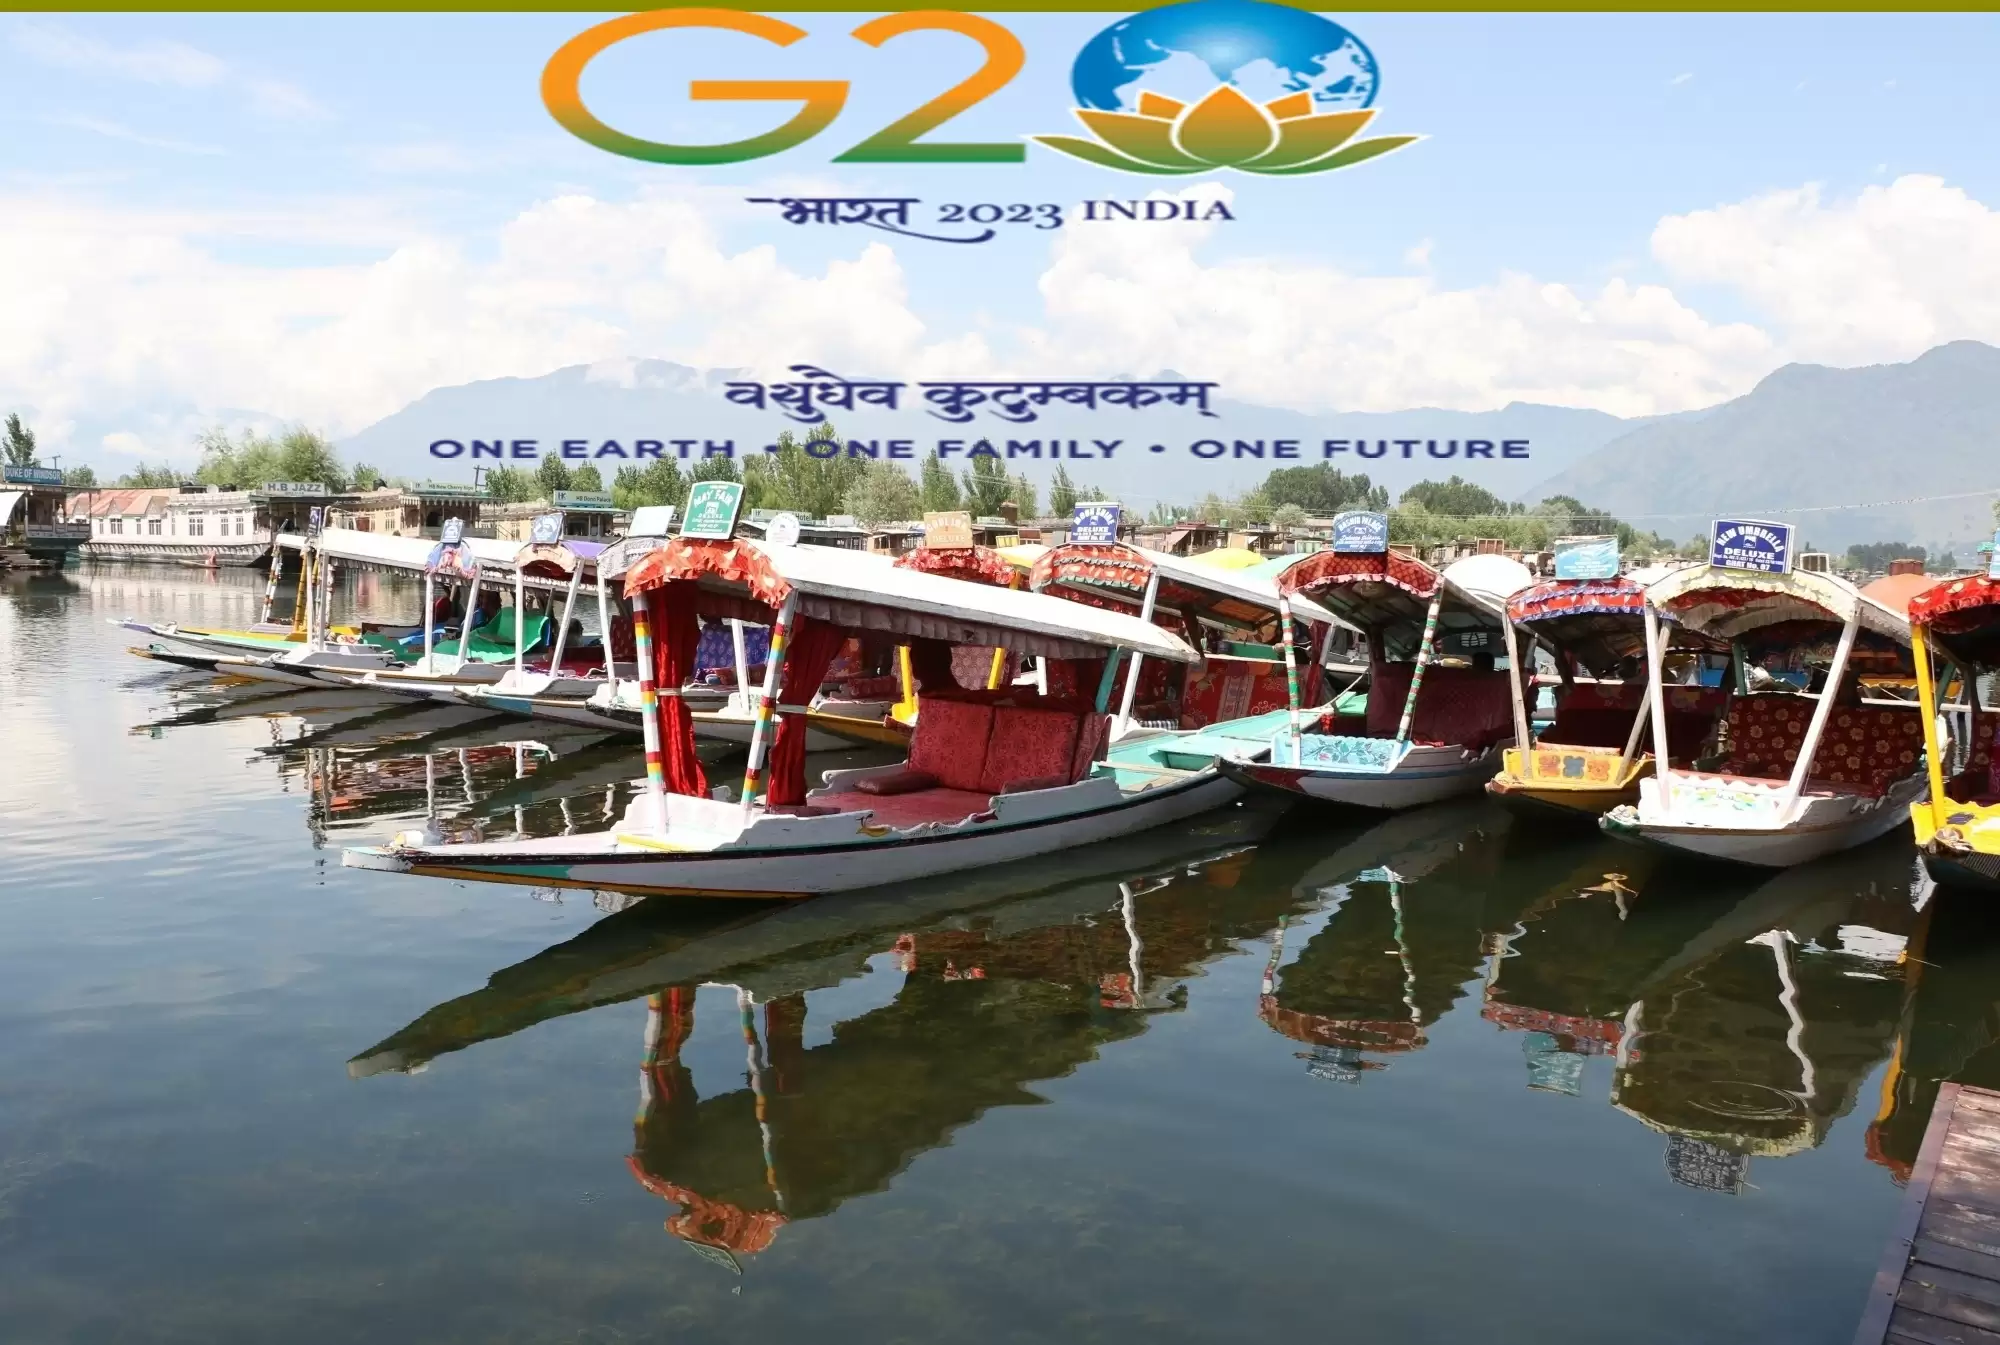 जी20 के प्रतिनिधियों ने जम्मू-कश्मीर के श्रीनगर में मनोरम स्थलों का दौरा किया।